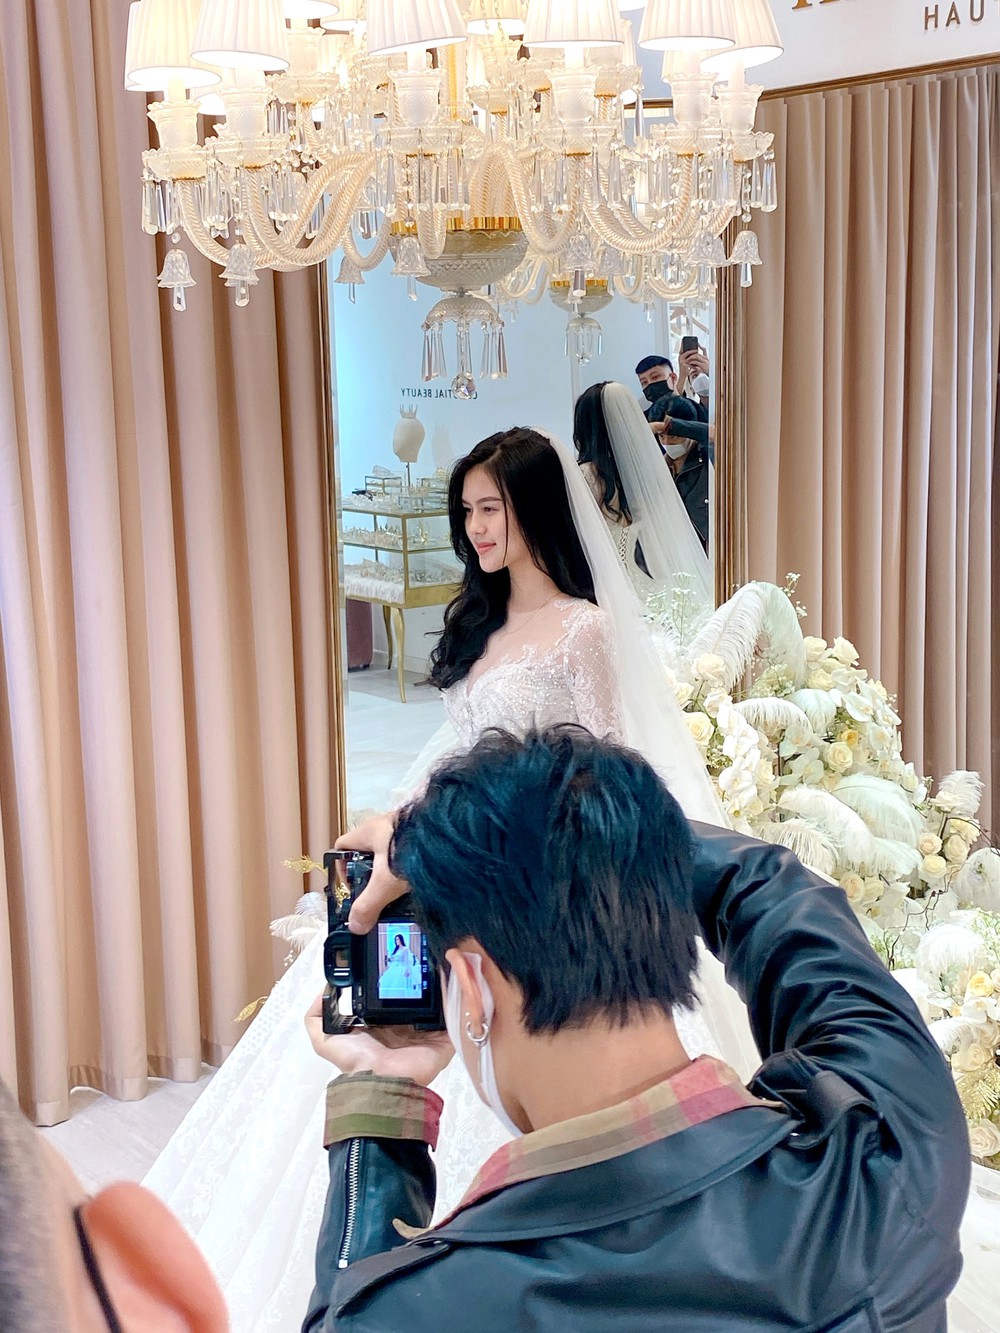 Thành Chung phong độ ngời ngời ở hậu trường chụp ảnh cưới, cười tít bên cô dâu xinh - Ảnh 5.